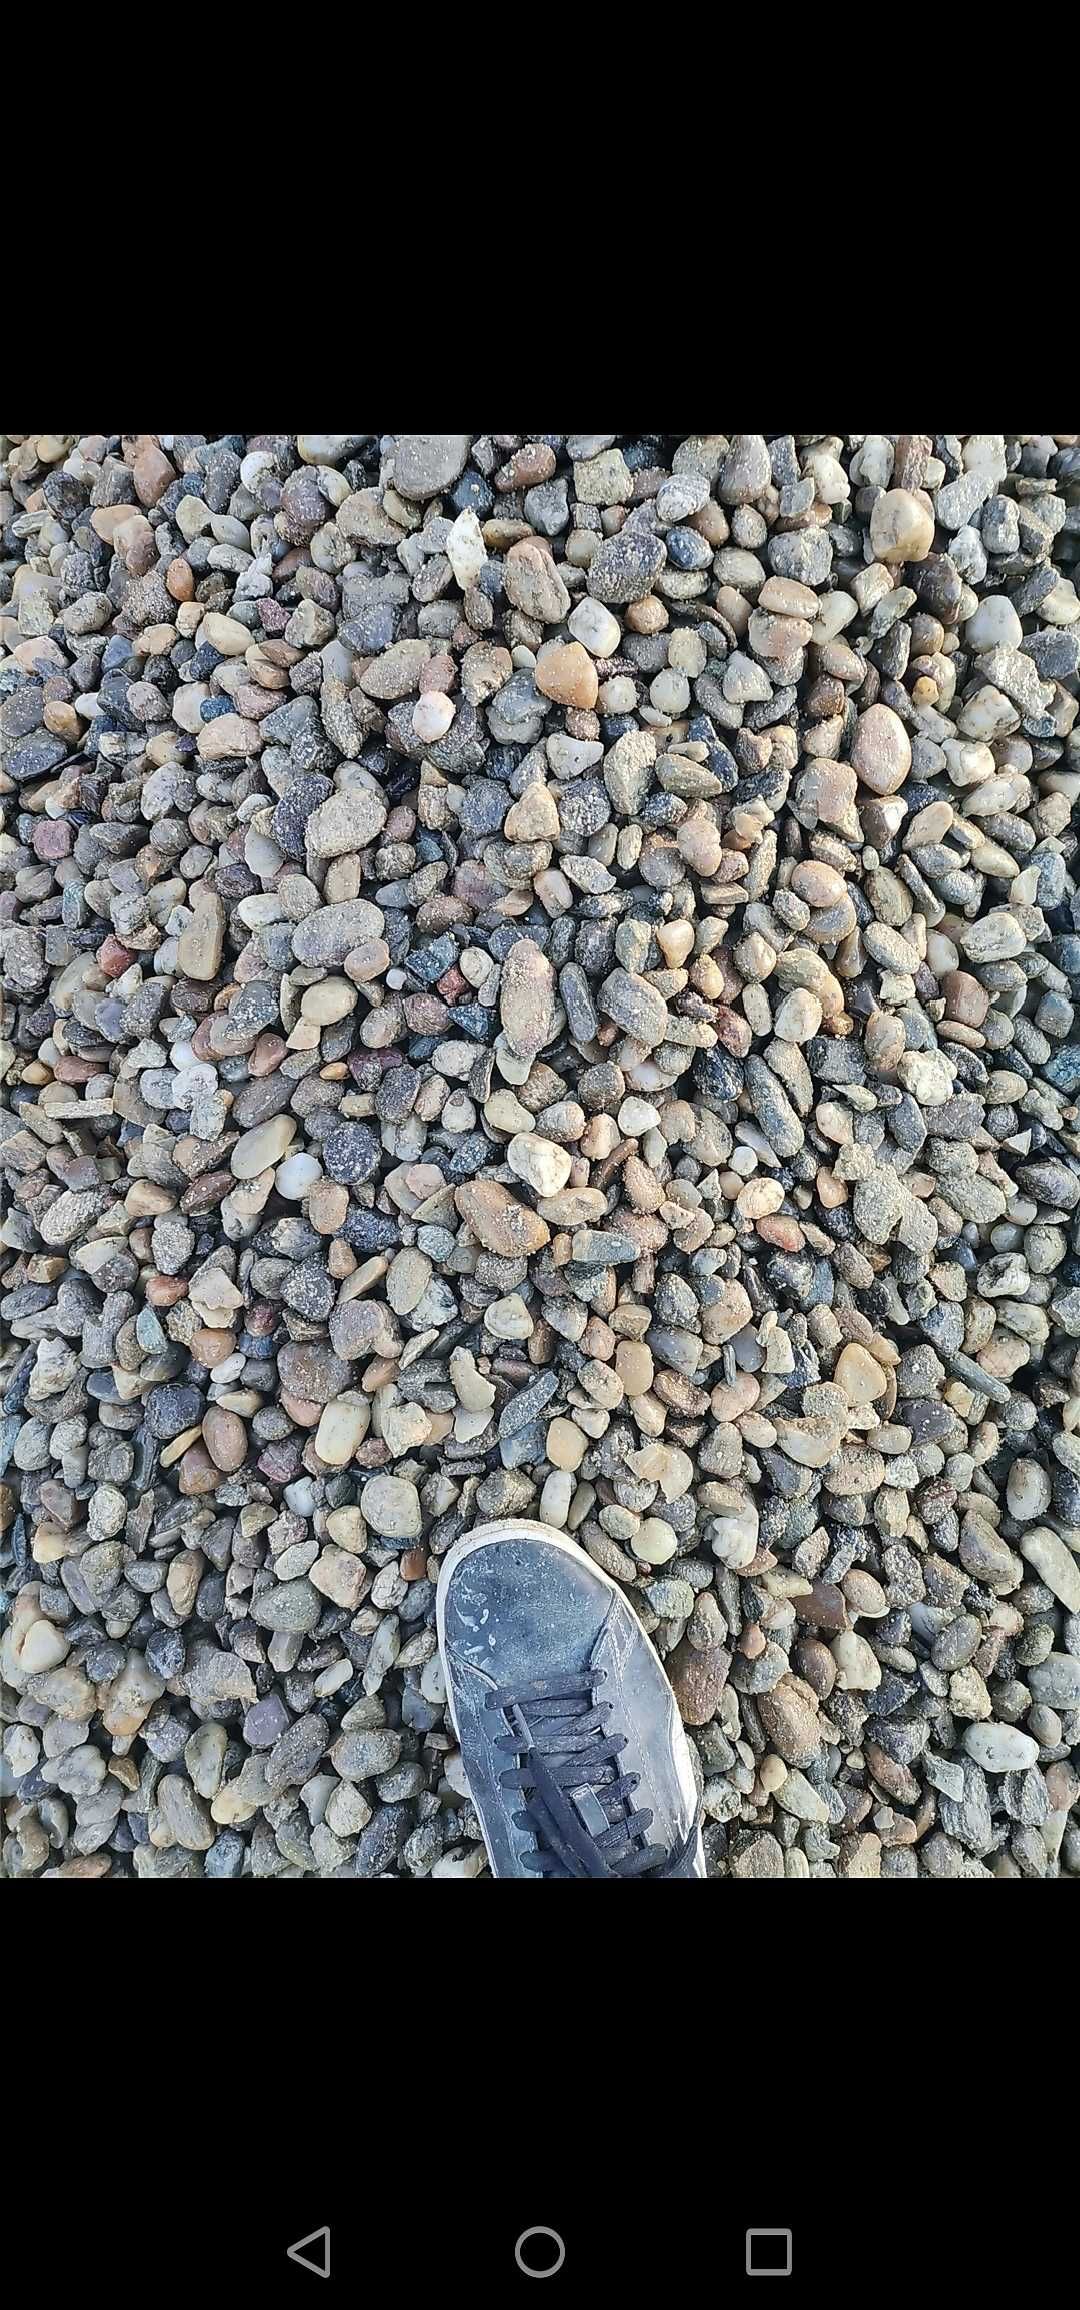 Nisip sort piatra concasata pământ galben nisipos negru vegetal moloz